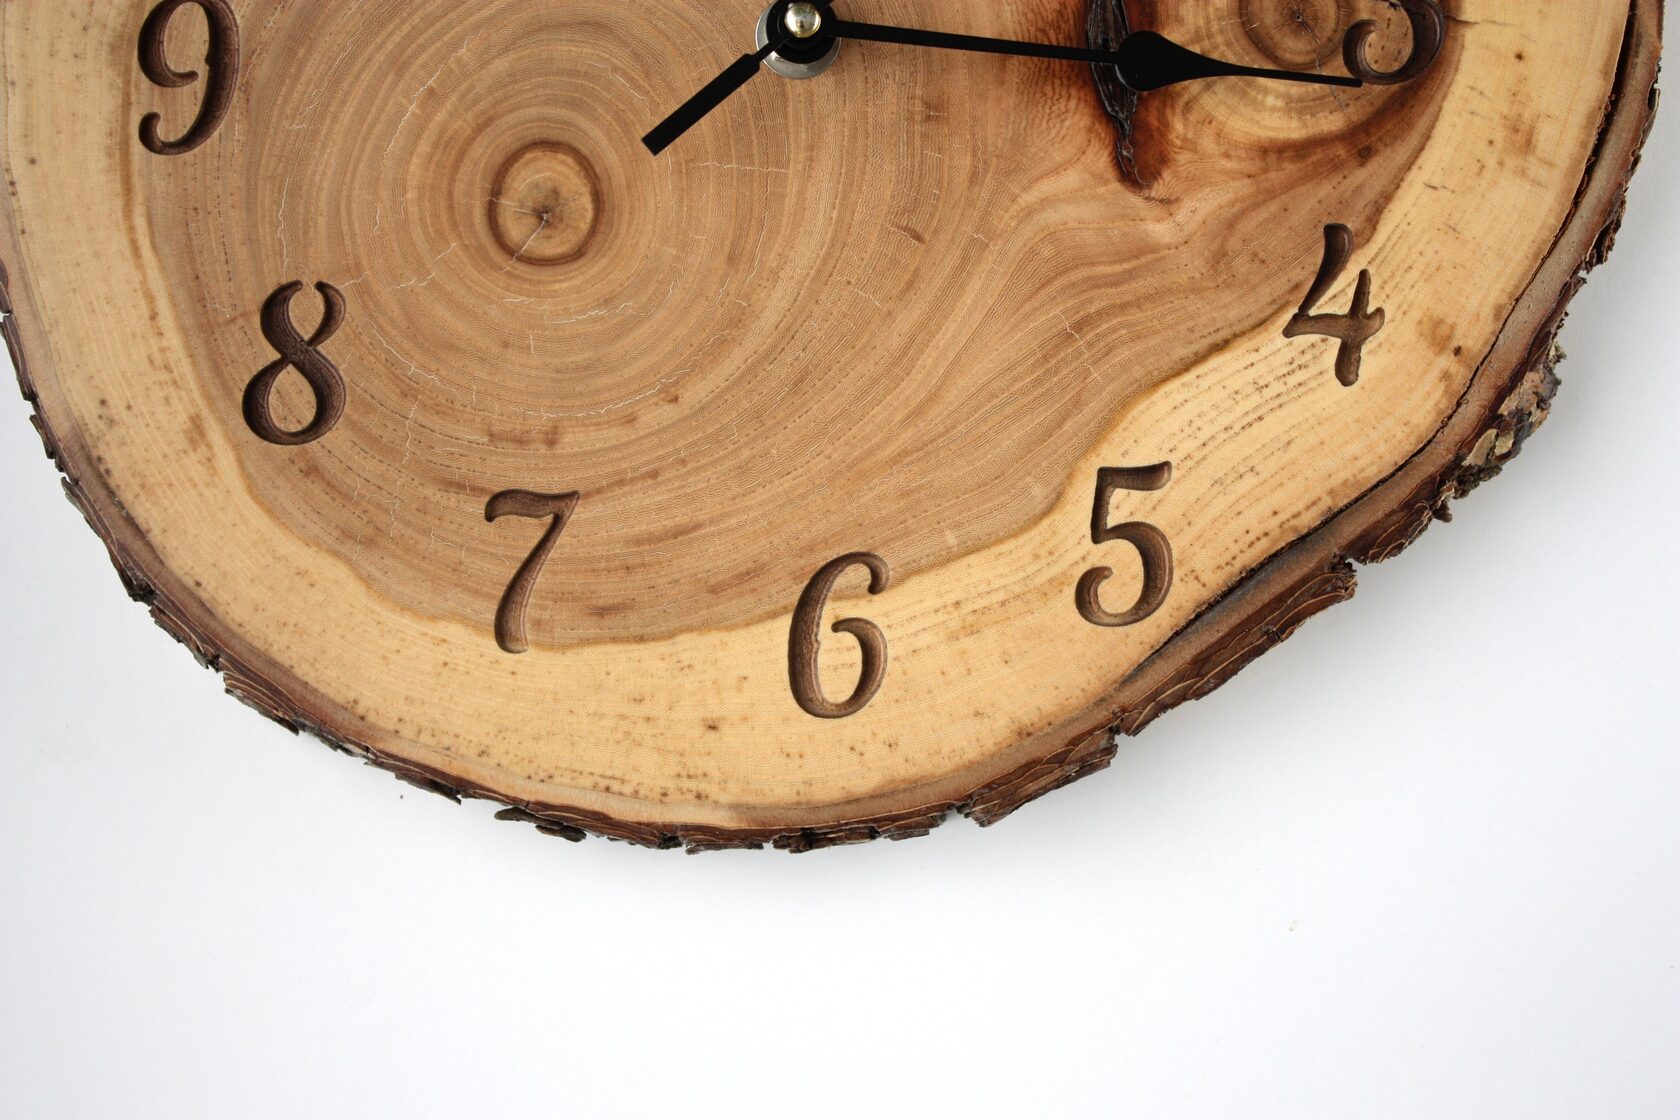 Часы из спила дерева